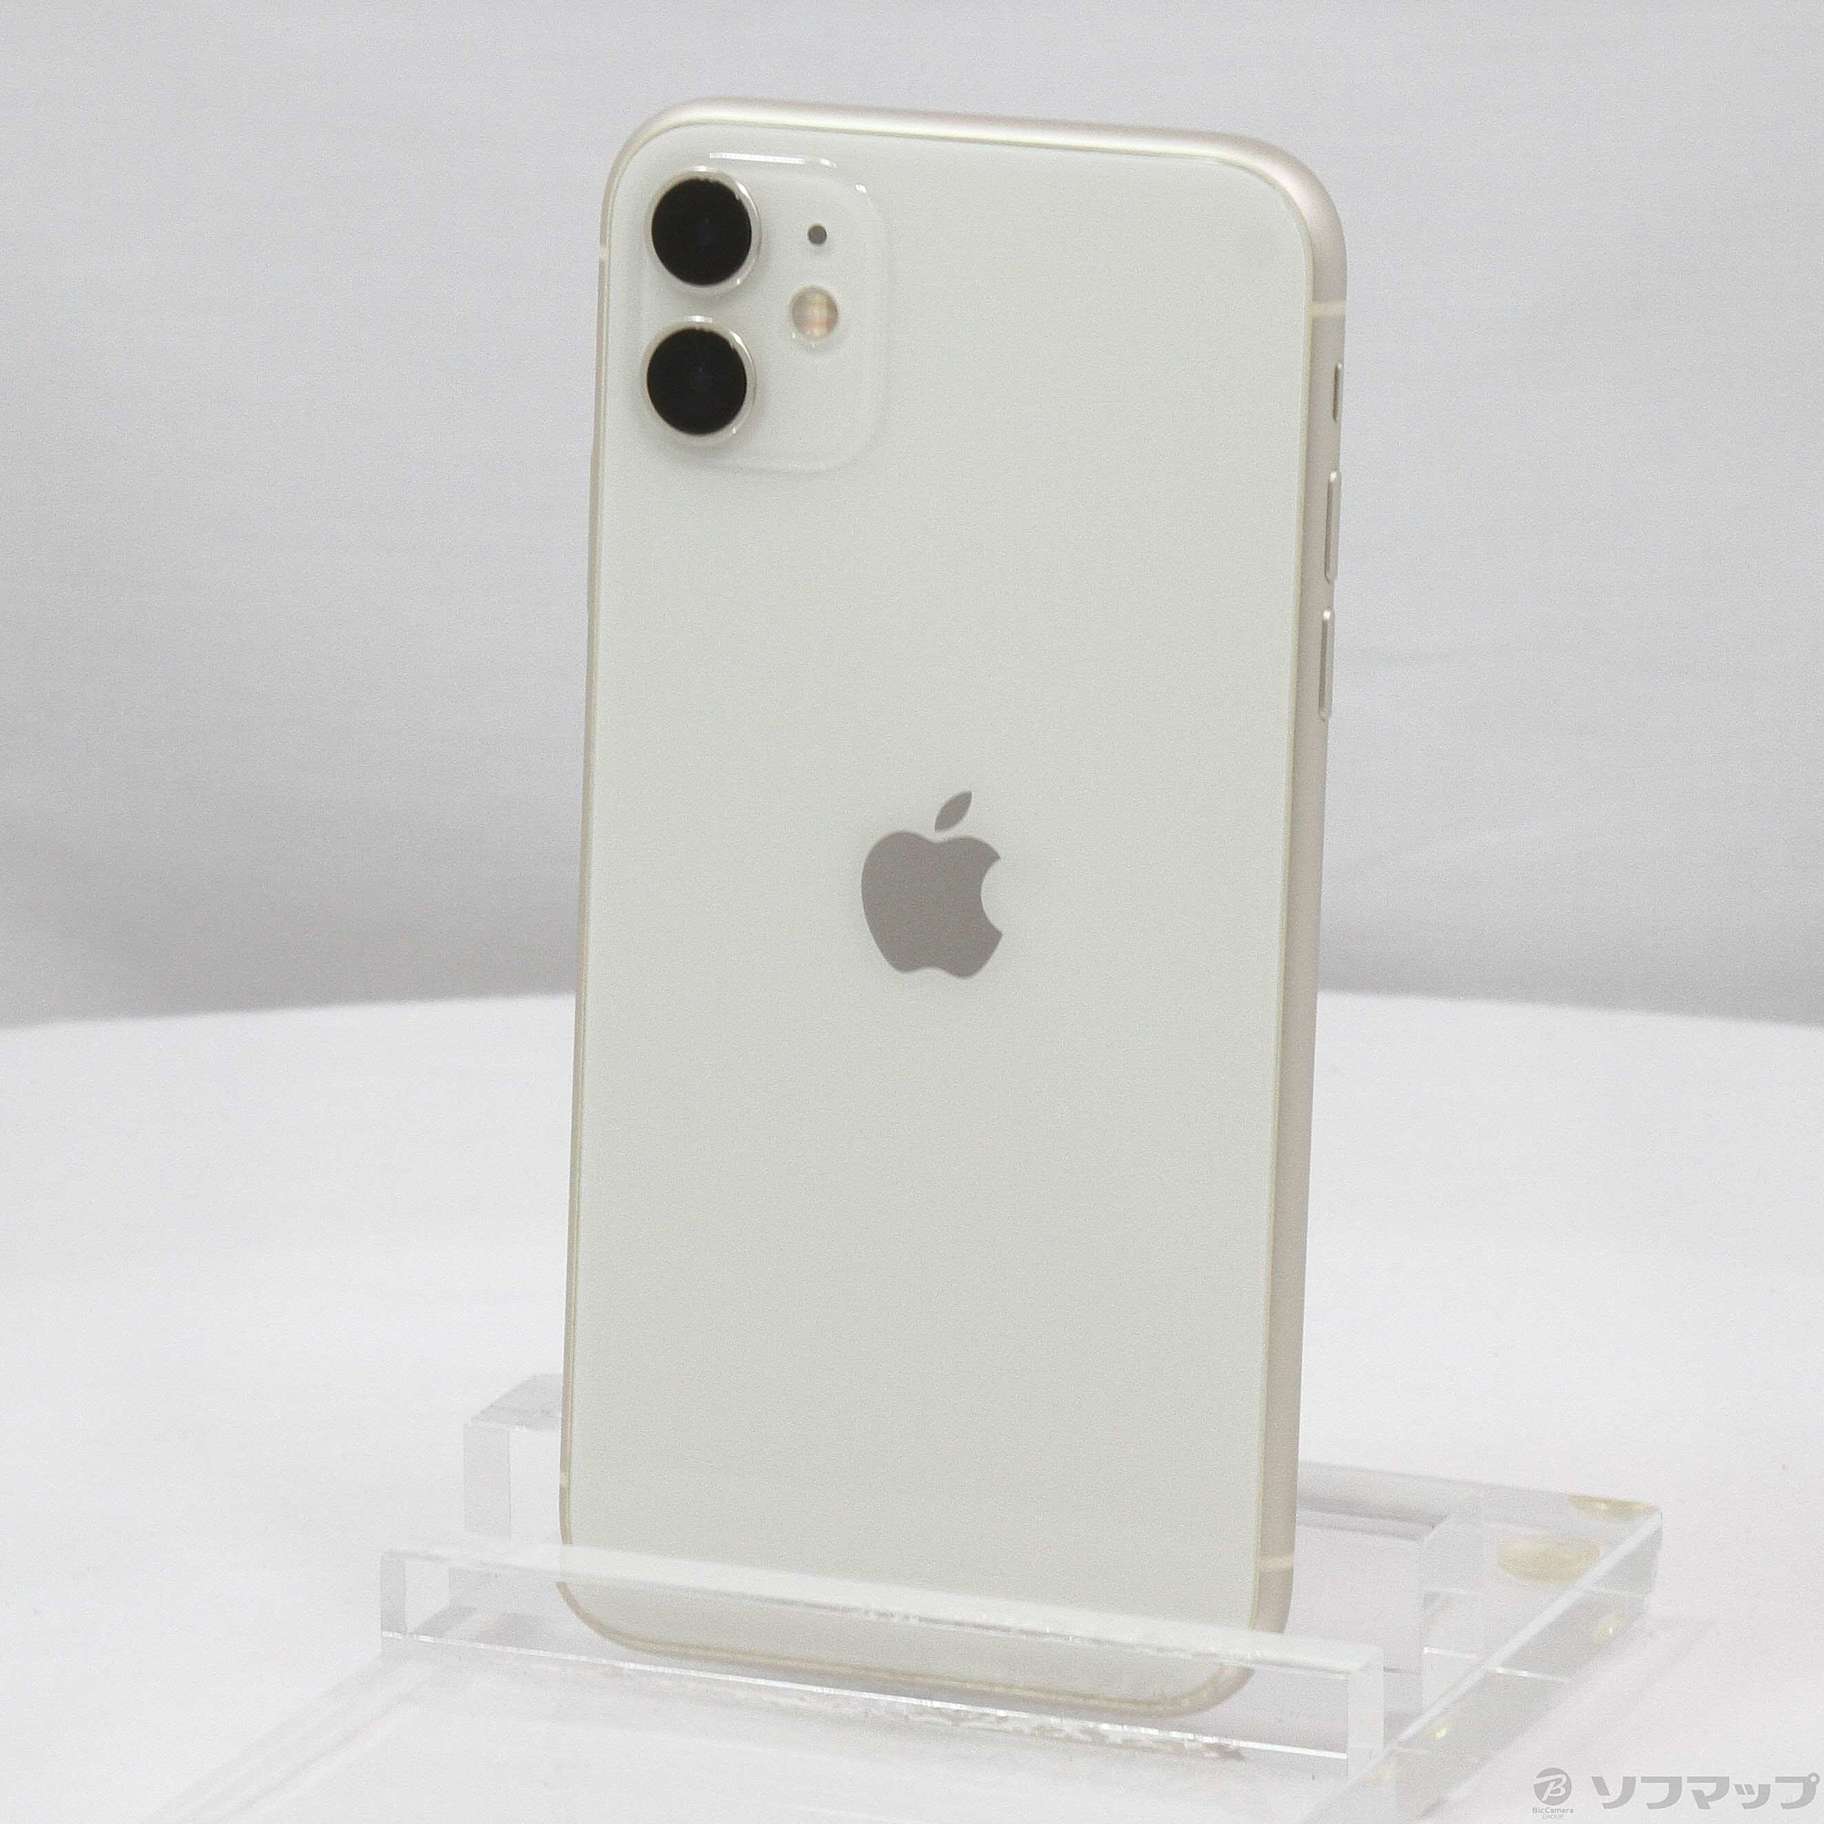 中古[美品]iPhone11 128GB ホワイト SIMフリー - スマートフォン本体